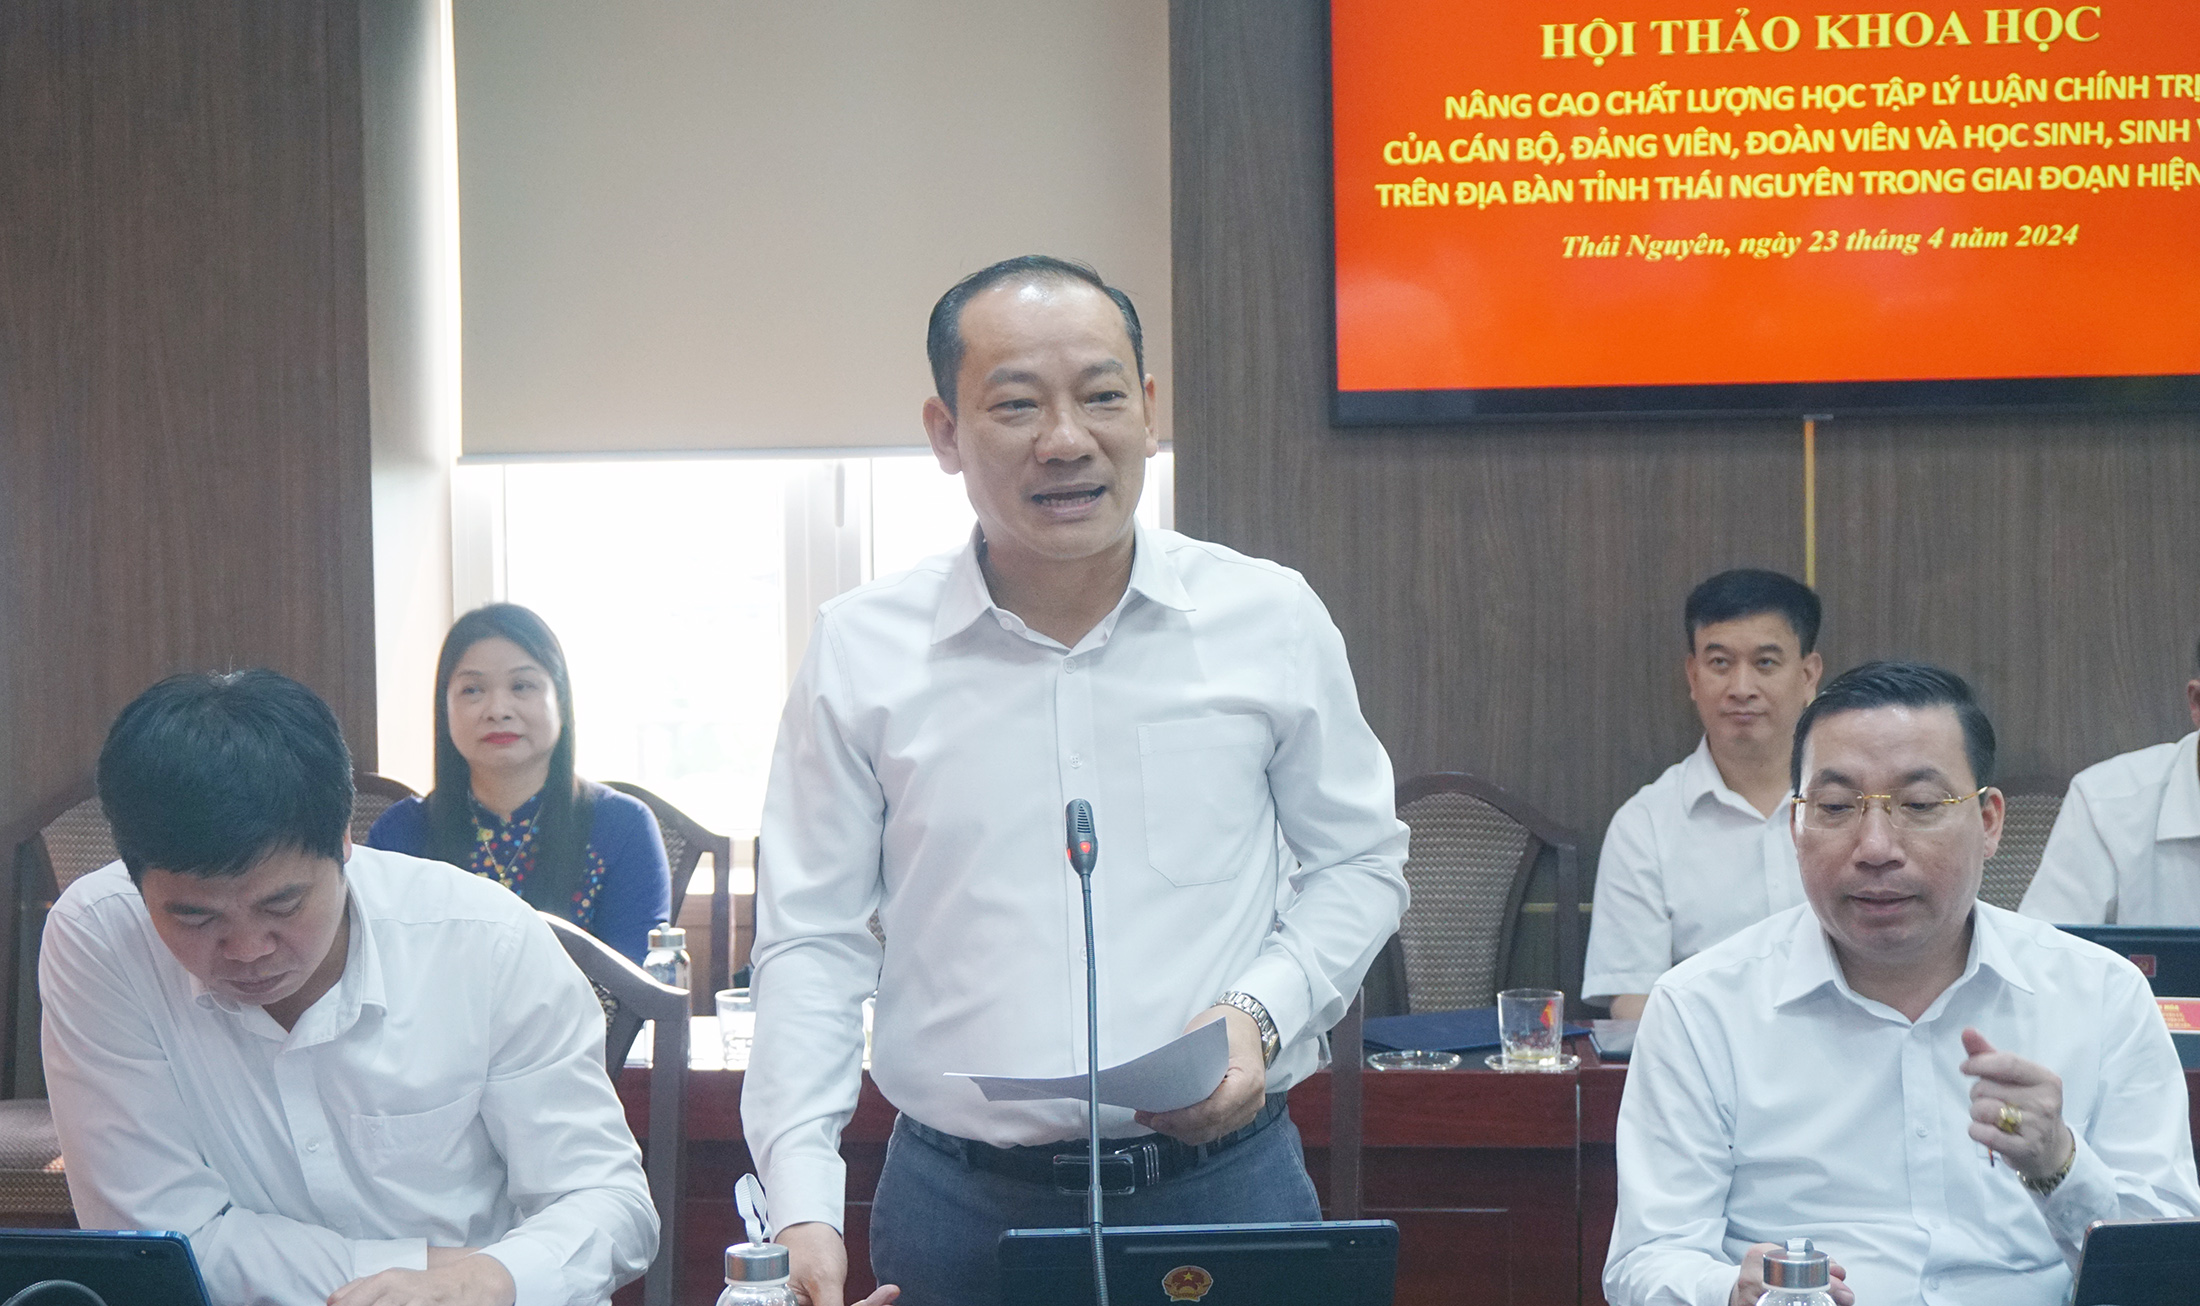 Đồng chí Nguyễn Mạnh Hà, Phó Bí thư Thường trực Thành ủy Thái Nguyên trình bày tham luận của đơn vị